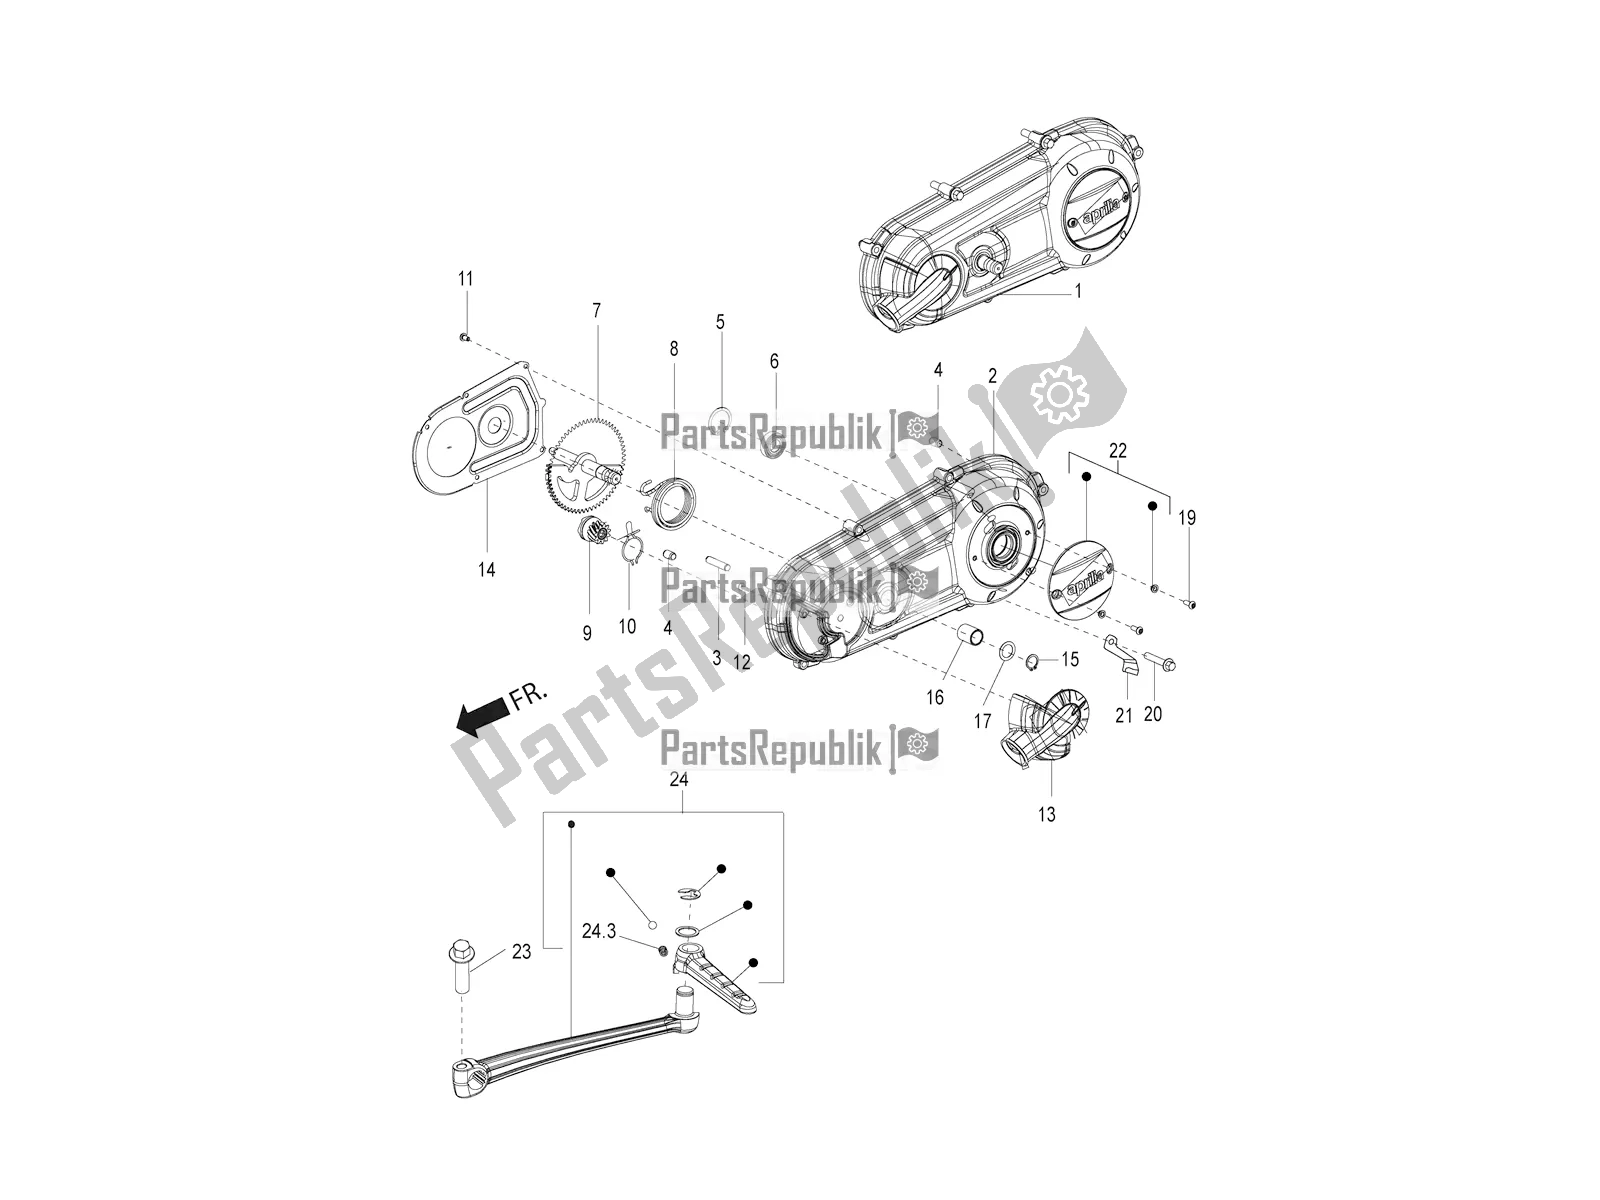 Toutes les pièces pour le Couvercle De Transmission du Aprilia SR Motard 150 ABS Racer Carb. Latam 2018